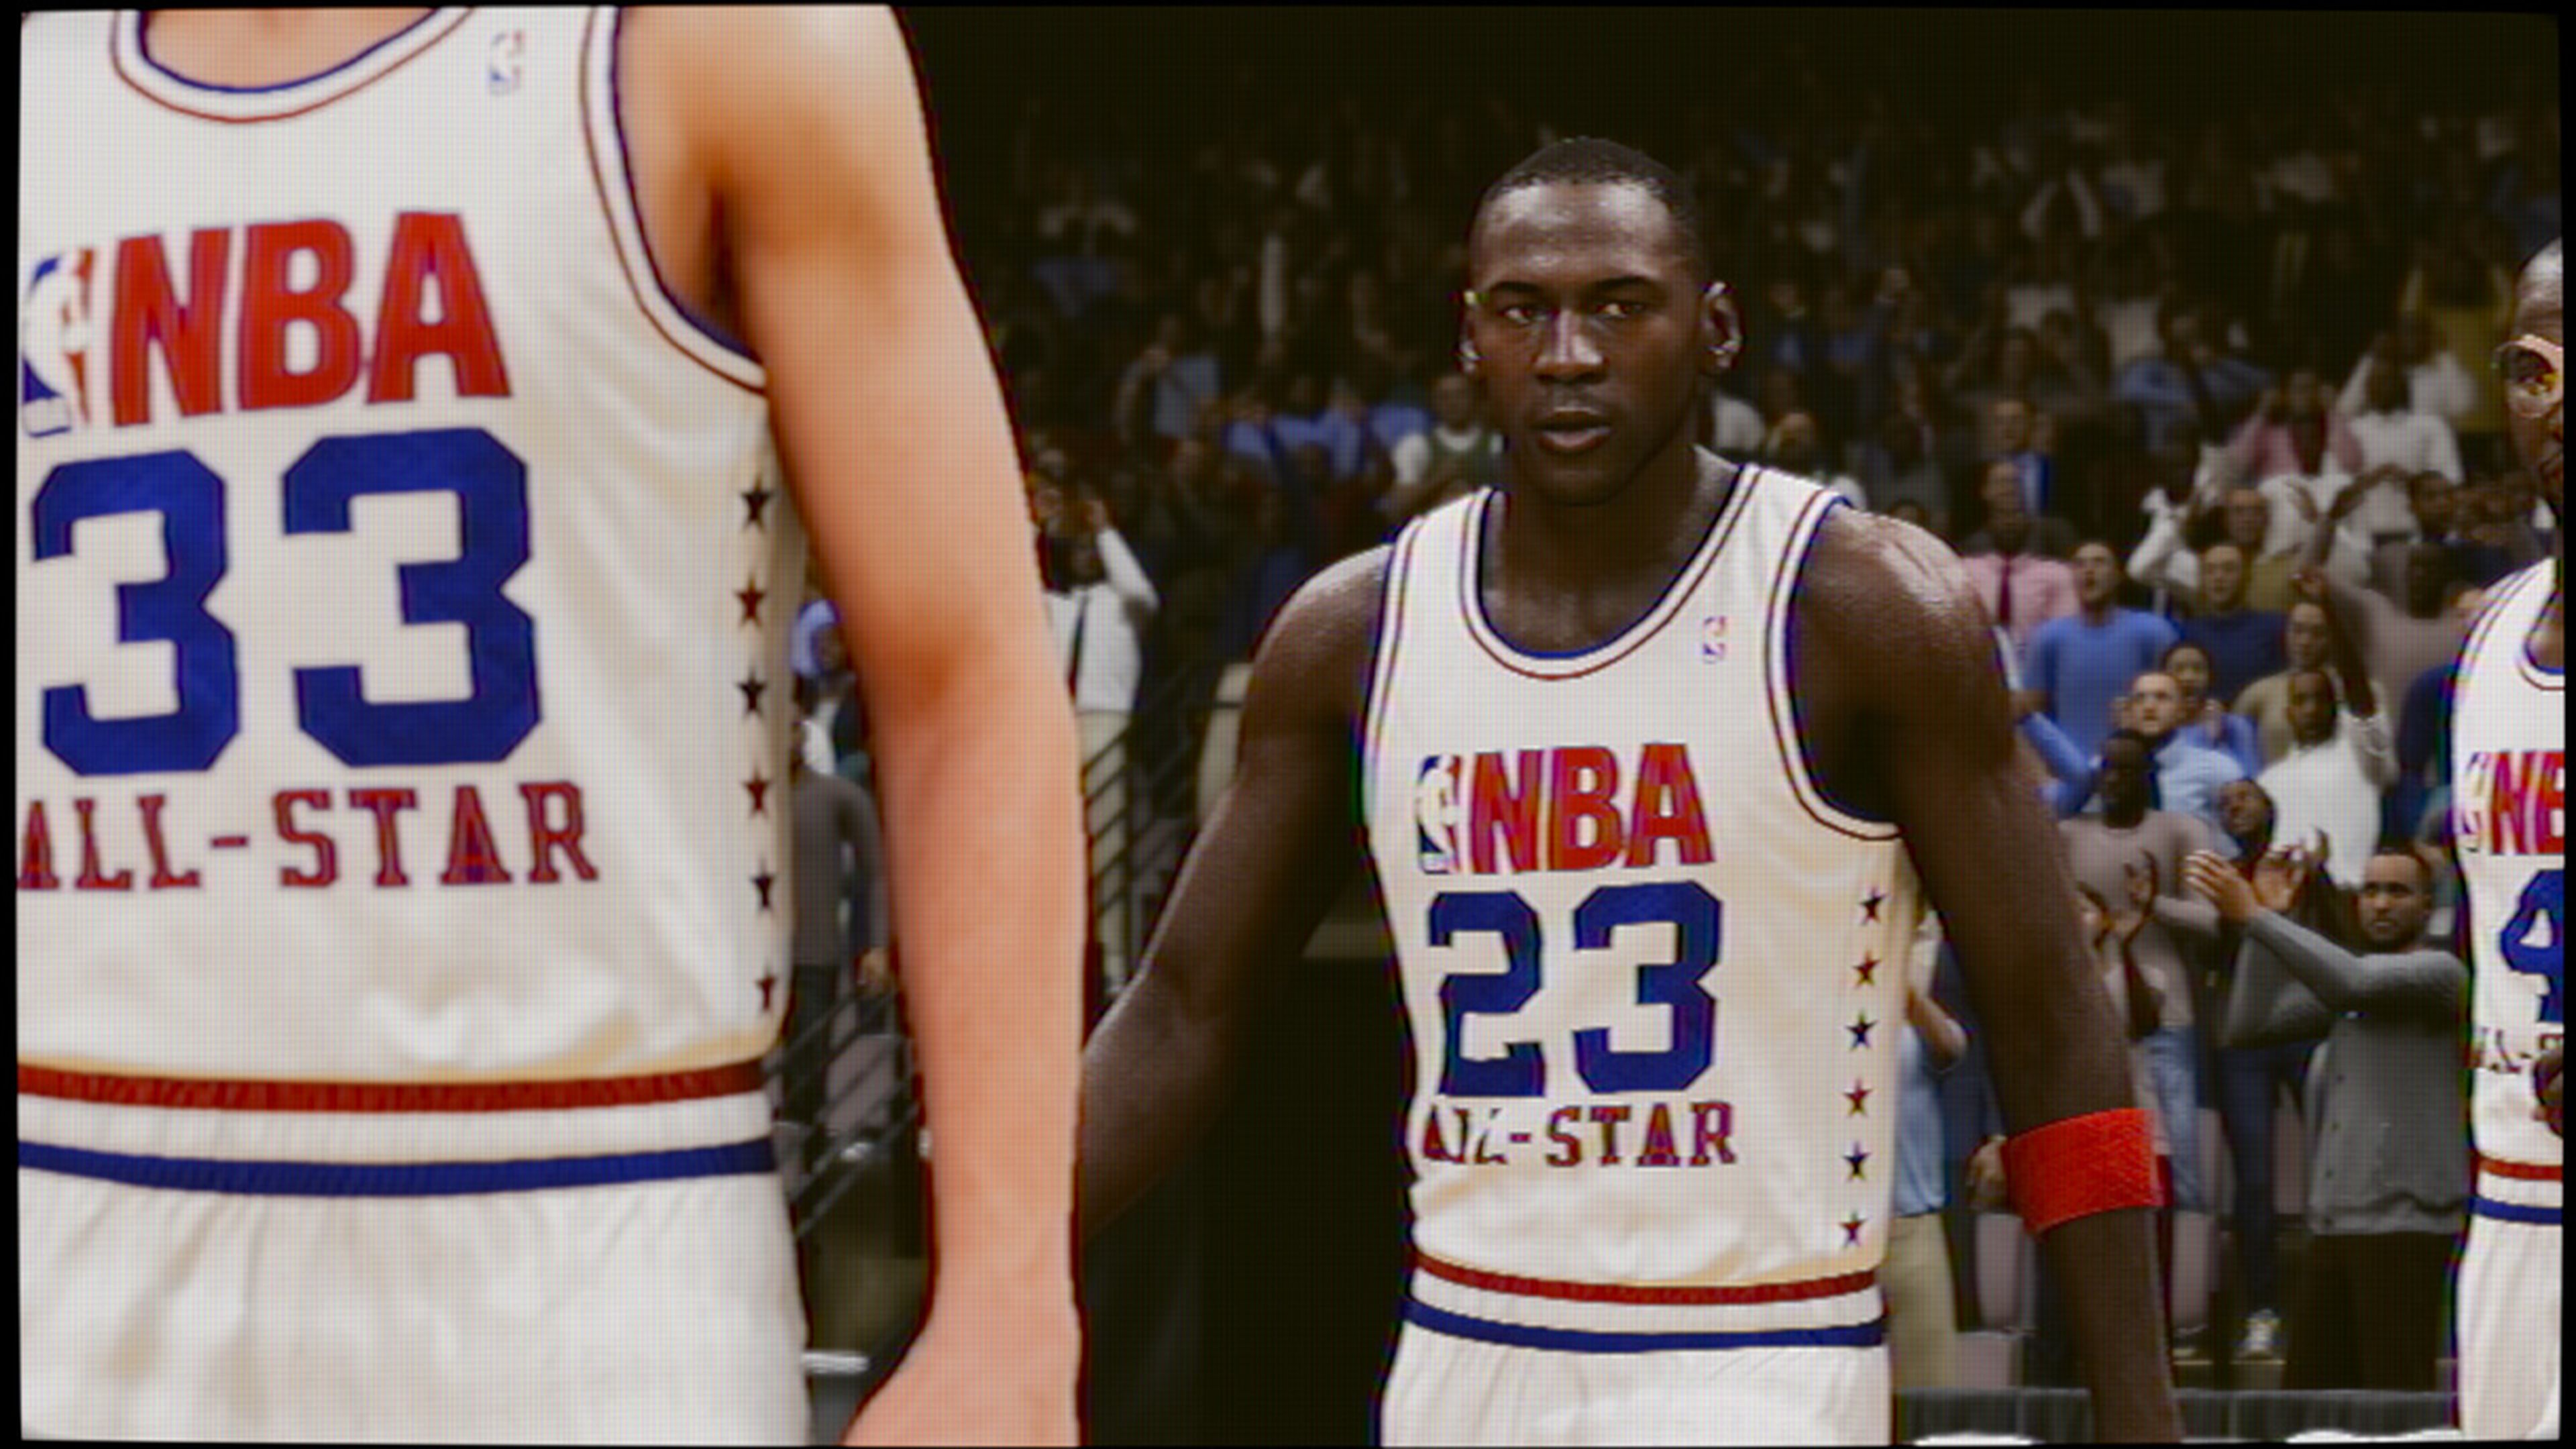 Así será Desafío Jordan, el modo estrella de NBA 2K23 basado en el mejor jugador de la historia